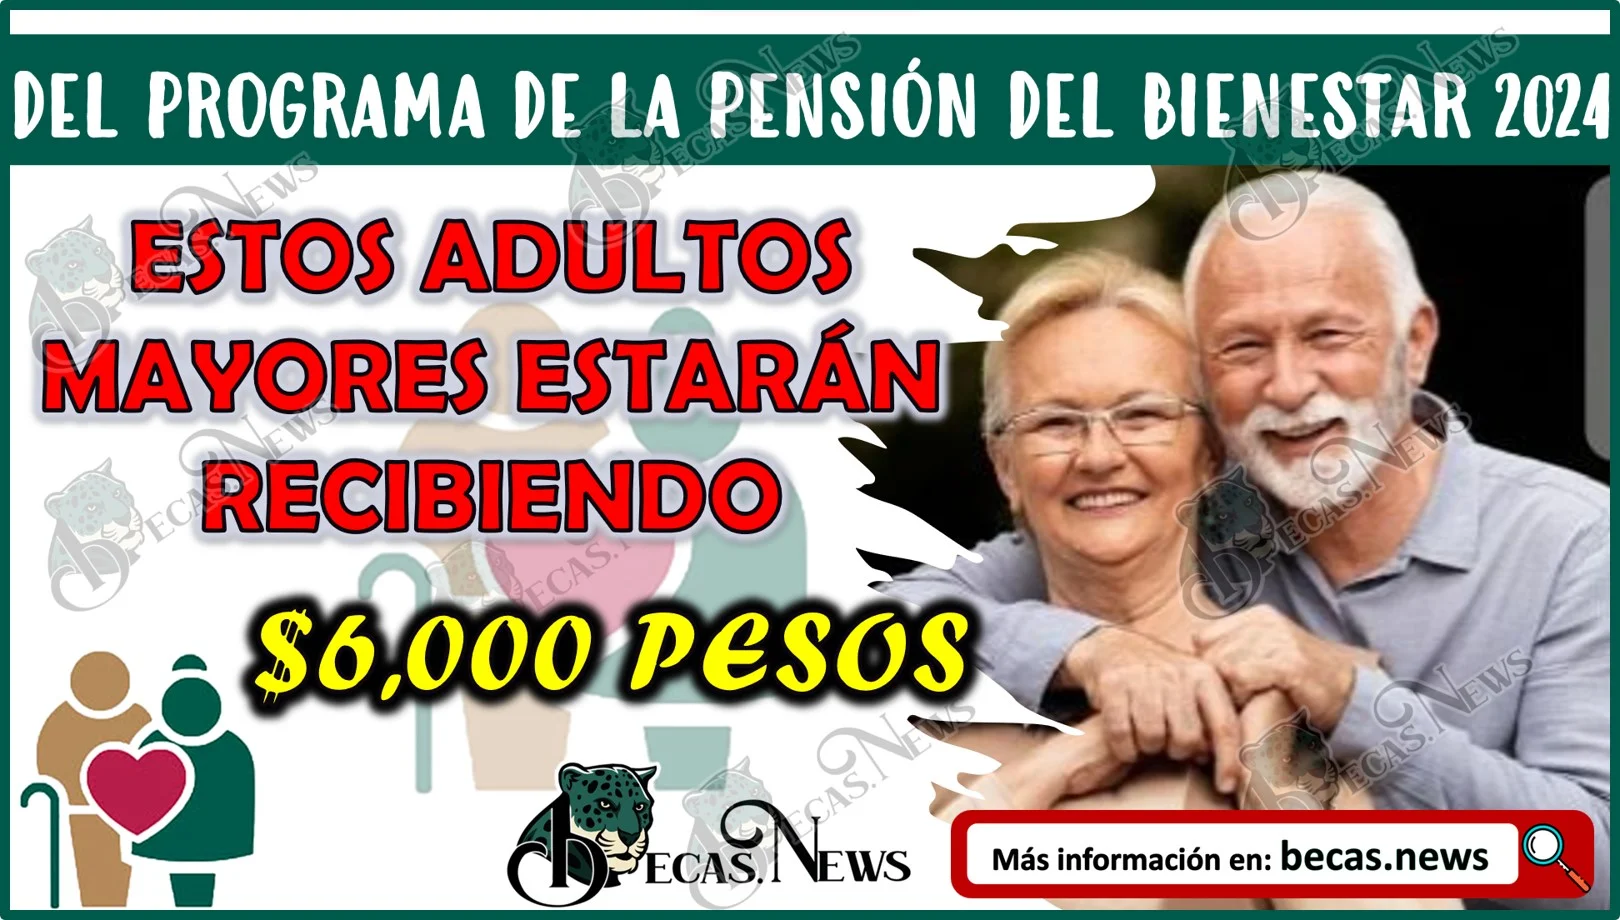 Estos adultos mayores estarán recibiendo $6,000 pesos del programa de la Pensión del Bienestar 2024